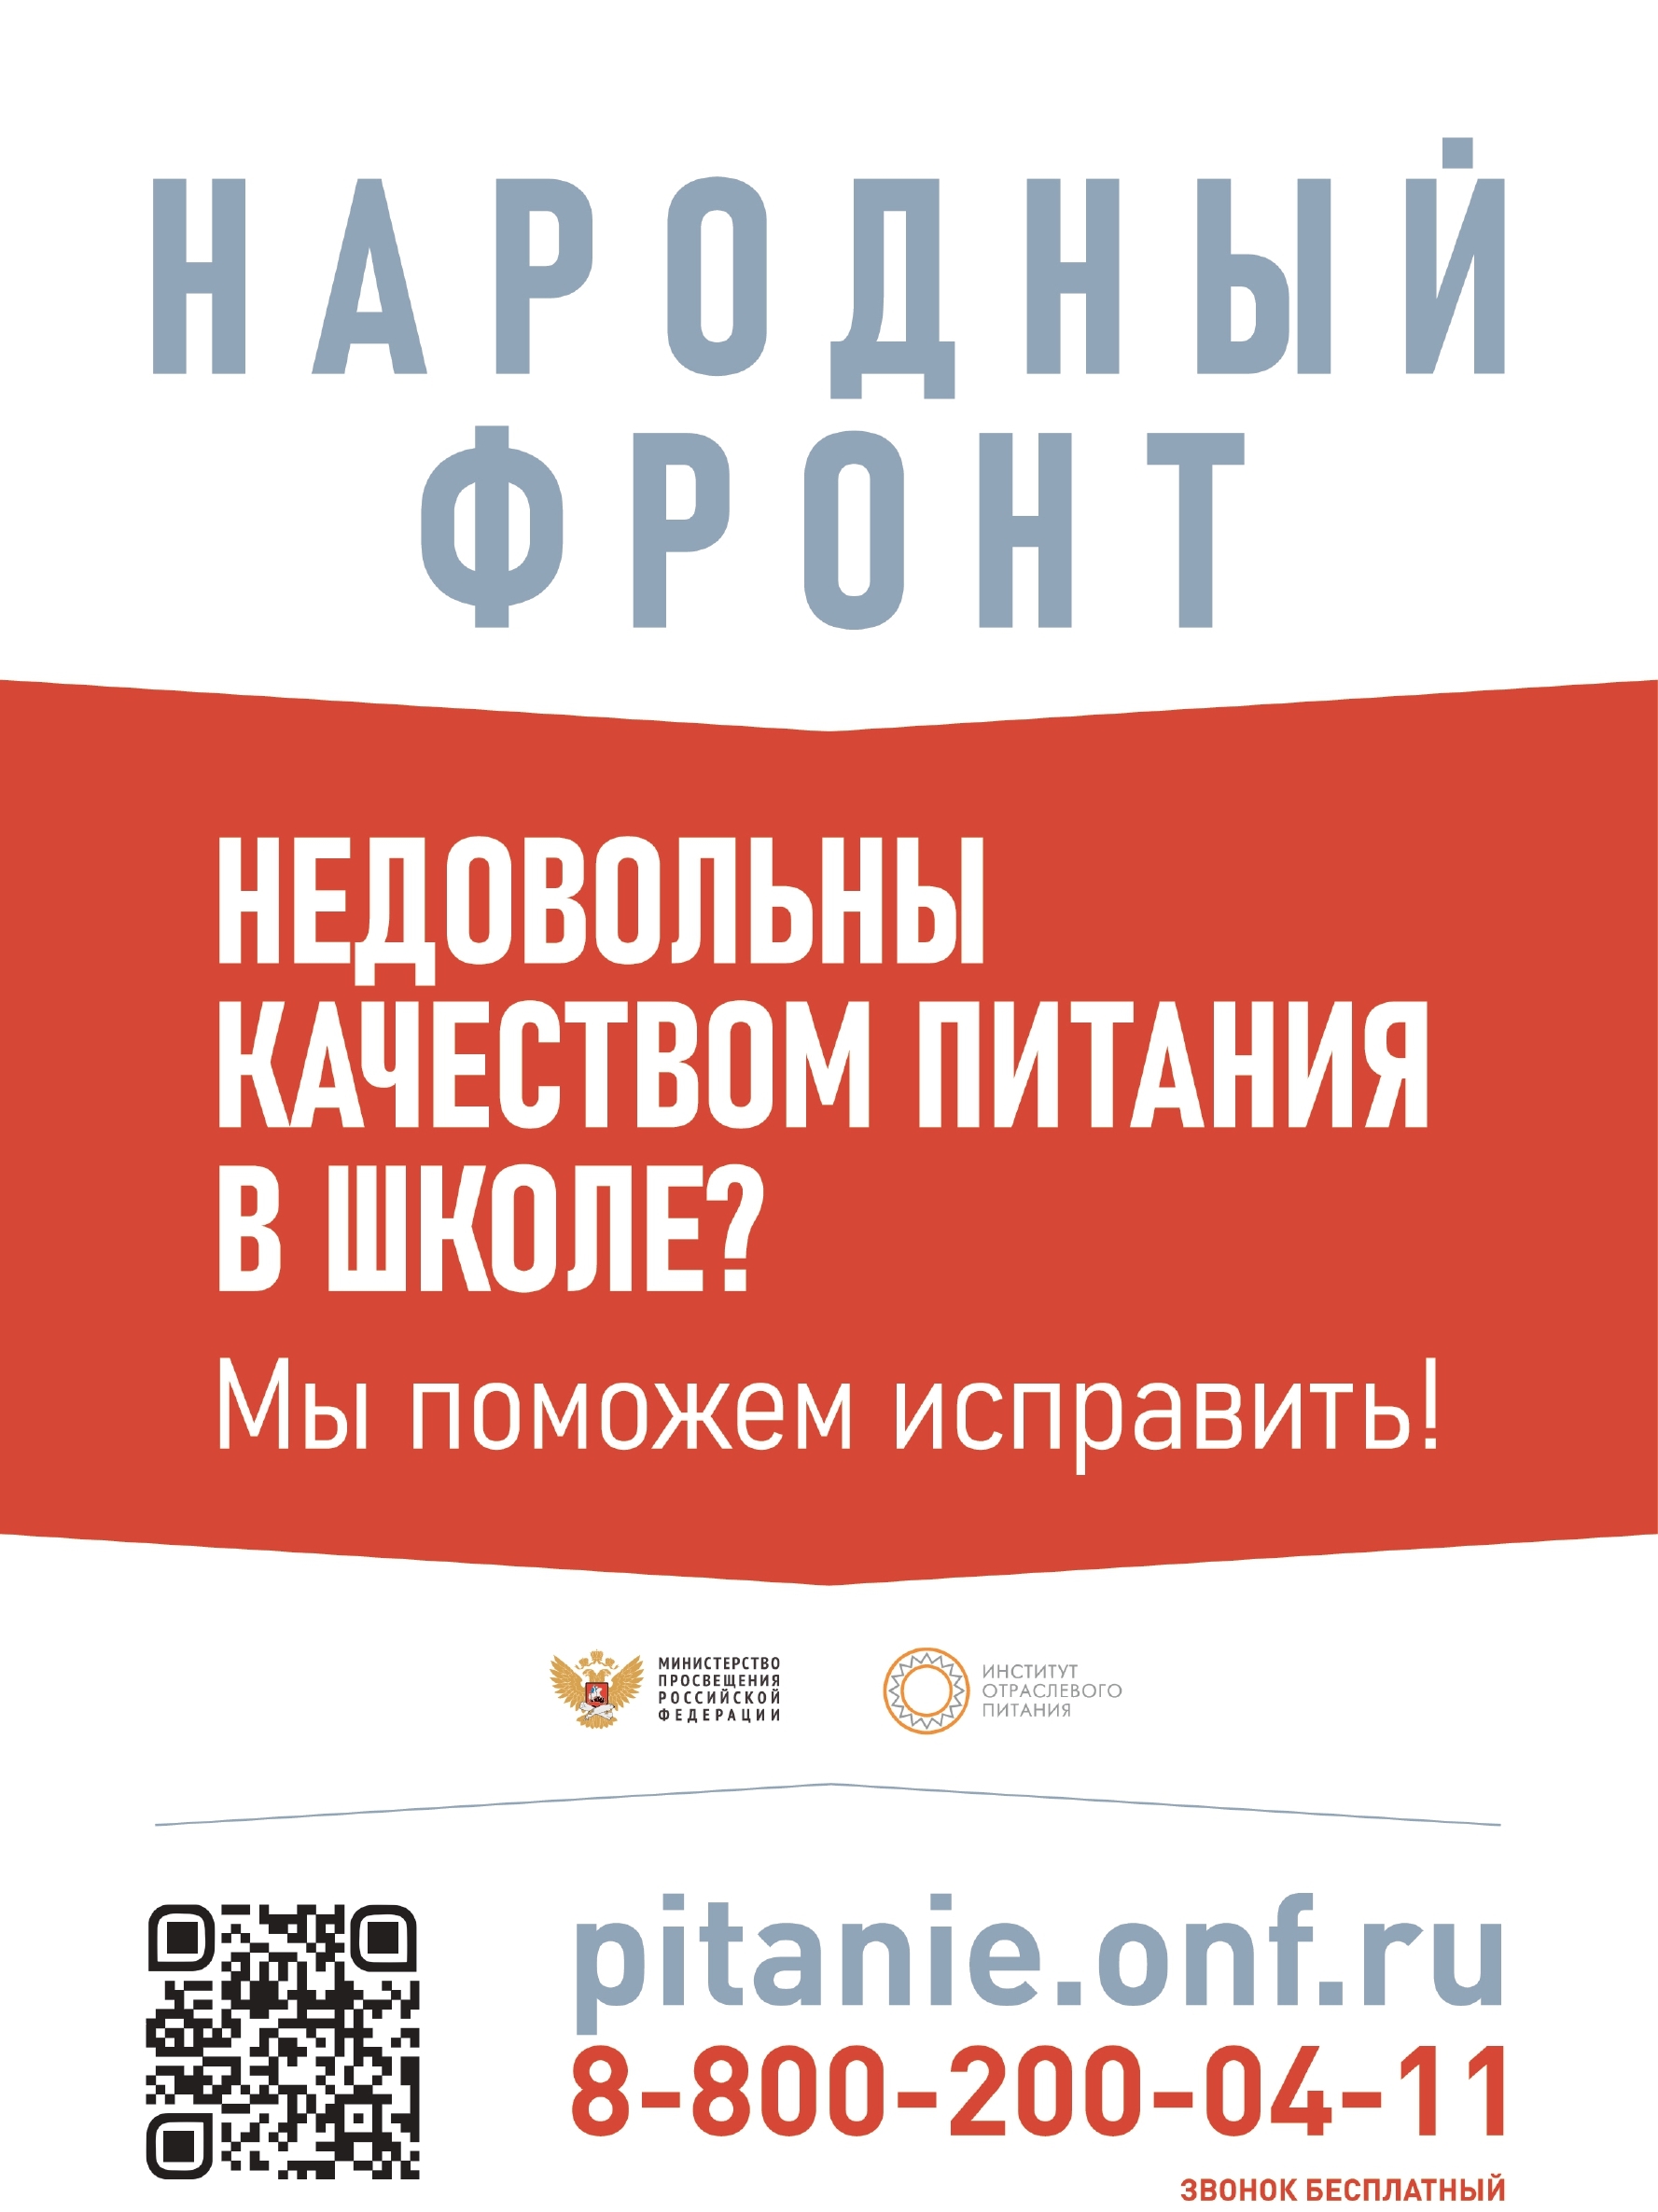 Социальная реклама Народный Фронт МБОУ Борковская ООШ